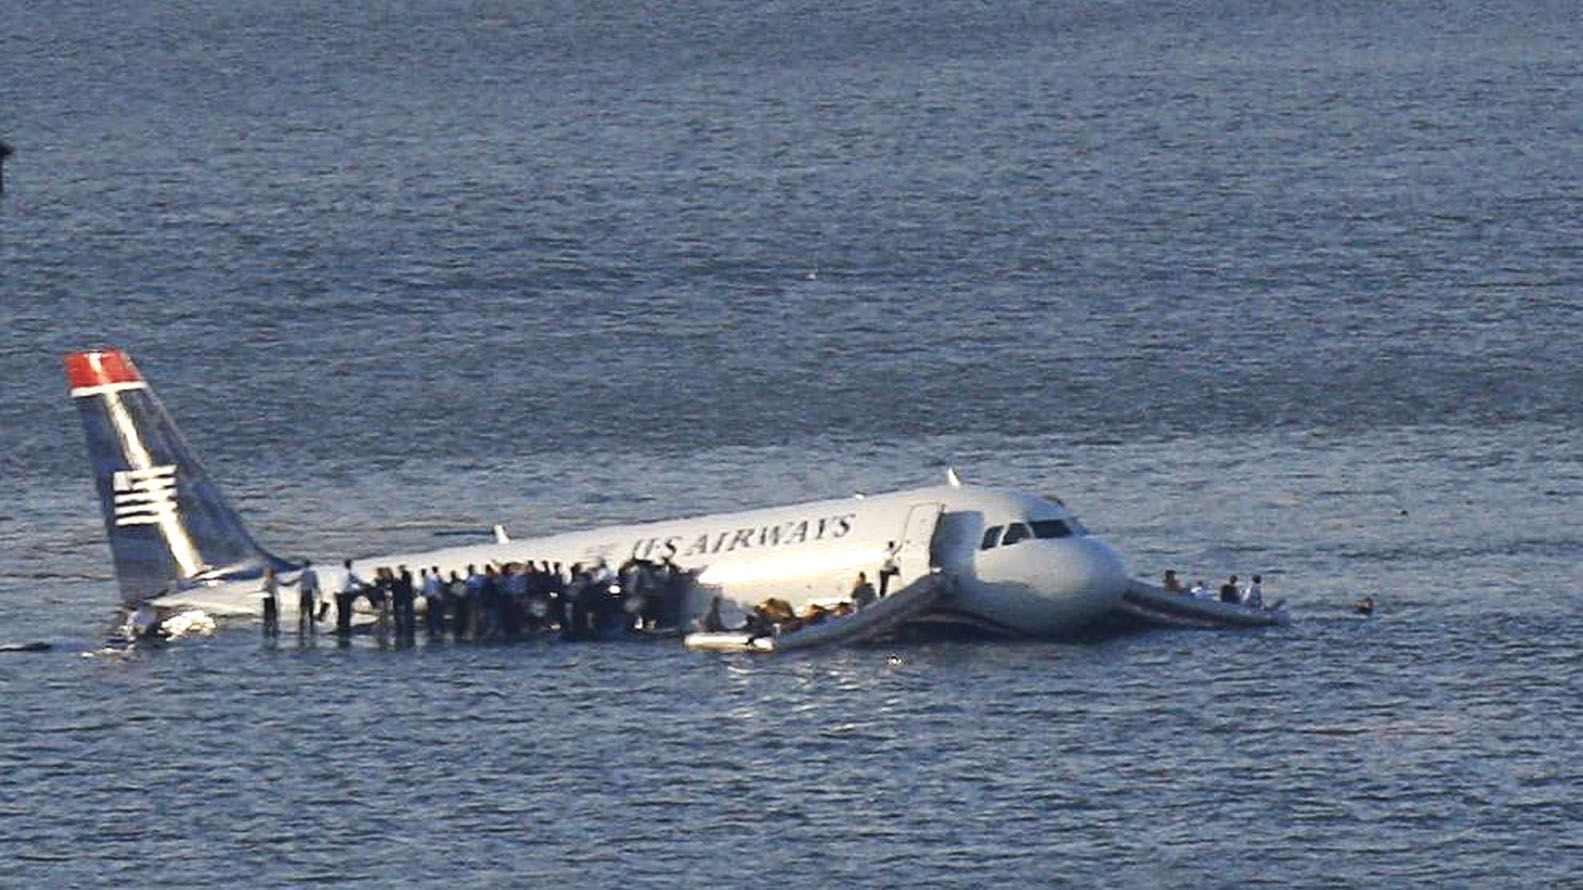 Melconian dijo que la tarea del gobierno es "aterrizar el avión en el Hudson", en referencia a un vuelo de US Airways que en enero de 2009, ante la falla de los dos motores, acuatizó en ese río a orillas de Nueva York, salvando la vida de los 150 pasajeros y 5 tripulantes, que fueron socorridos por embarcaciones cercanas